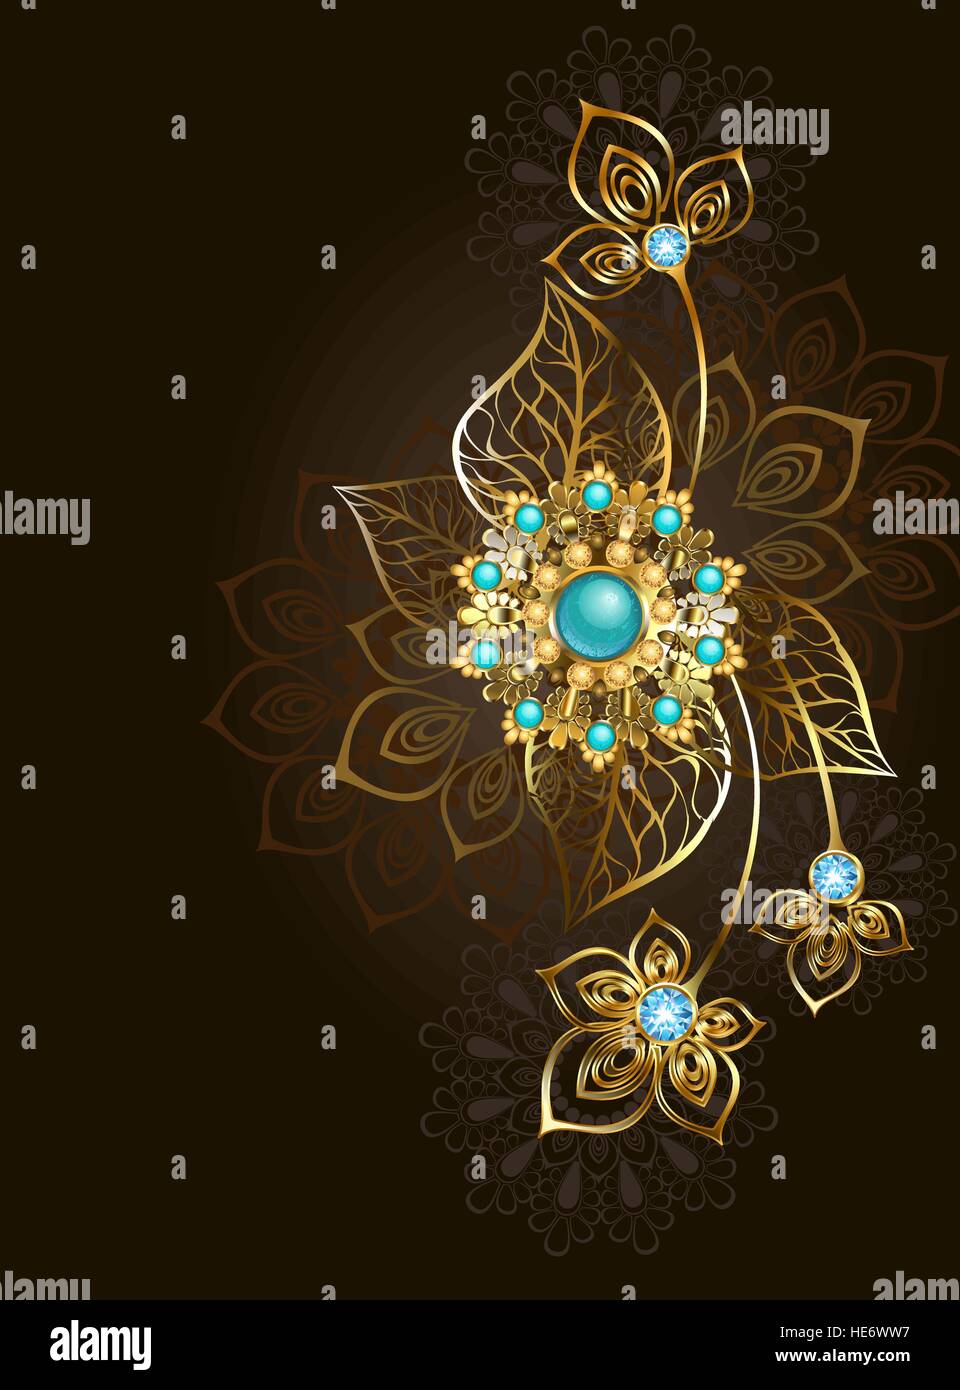 Bijoux en or des bijoux dans un style oriental, décoré avec un noir, turquoise sur fond brun. La conception de bijoux. Bijoux en or. Illustration de Vecteur